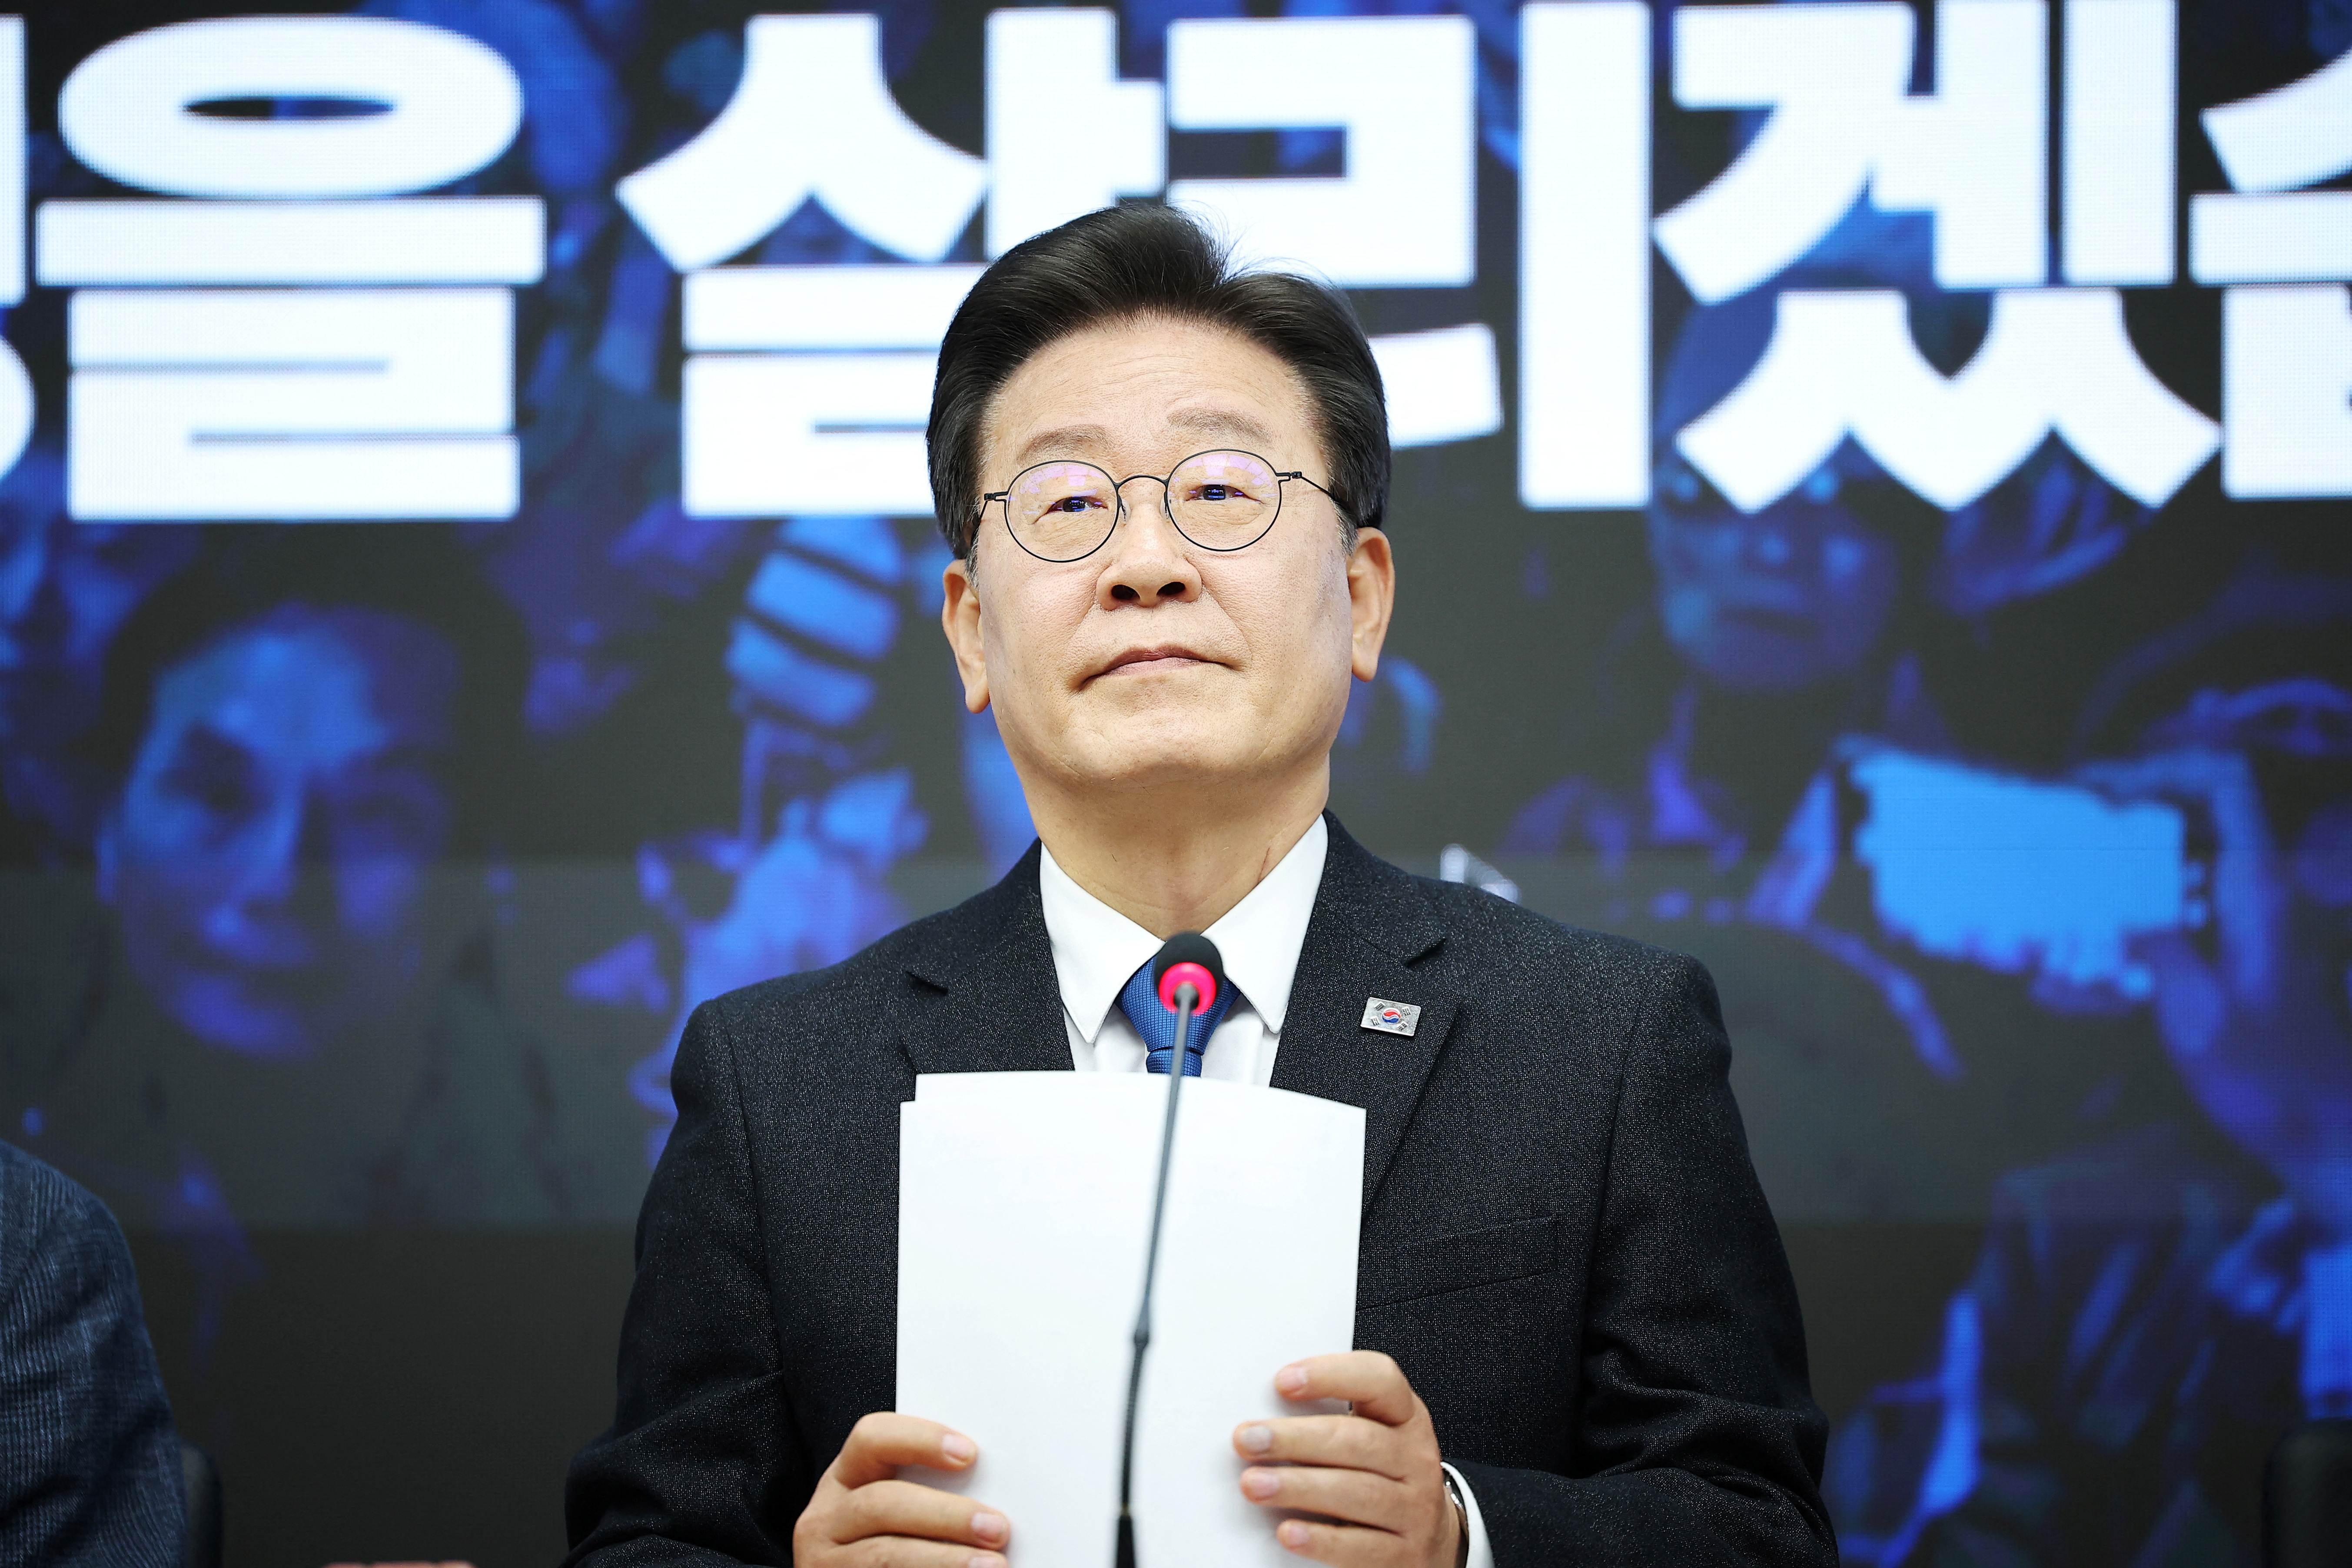 韓国最大野党の李代表を起訴、北朝鮮への不正送金巡り